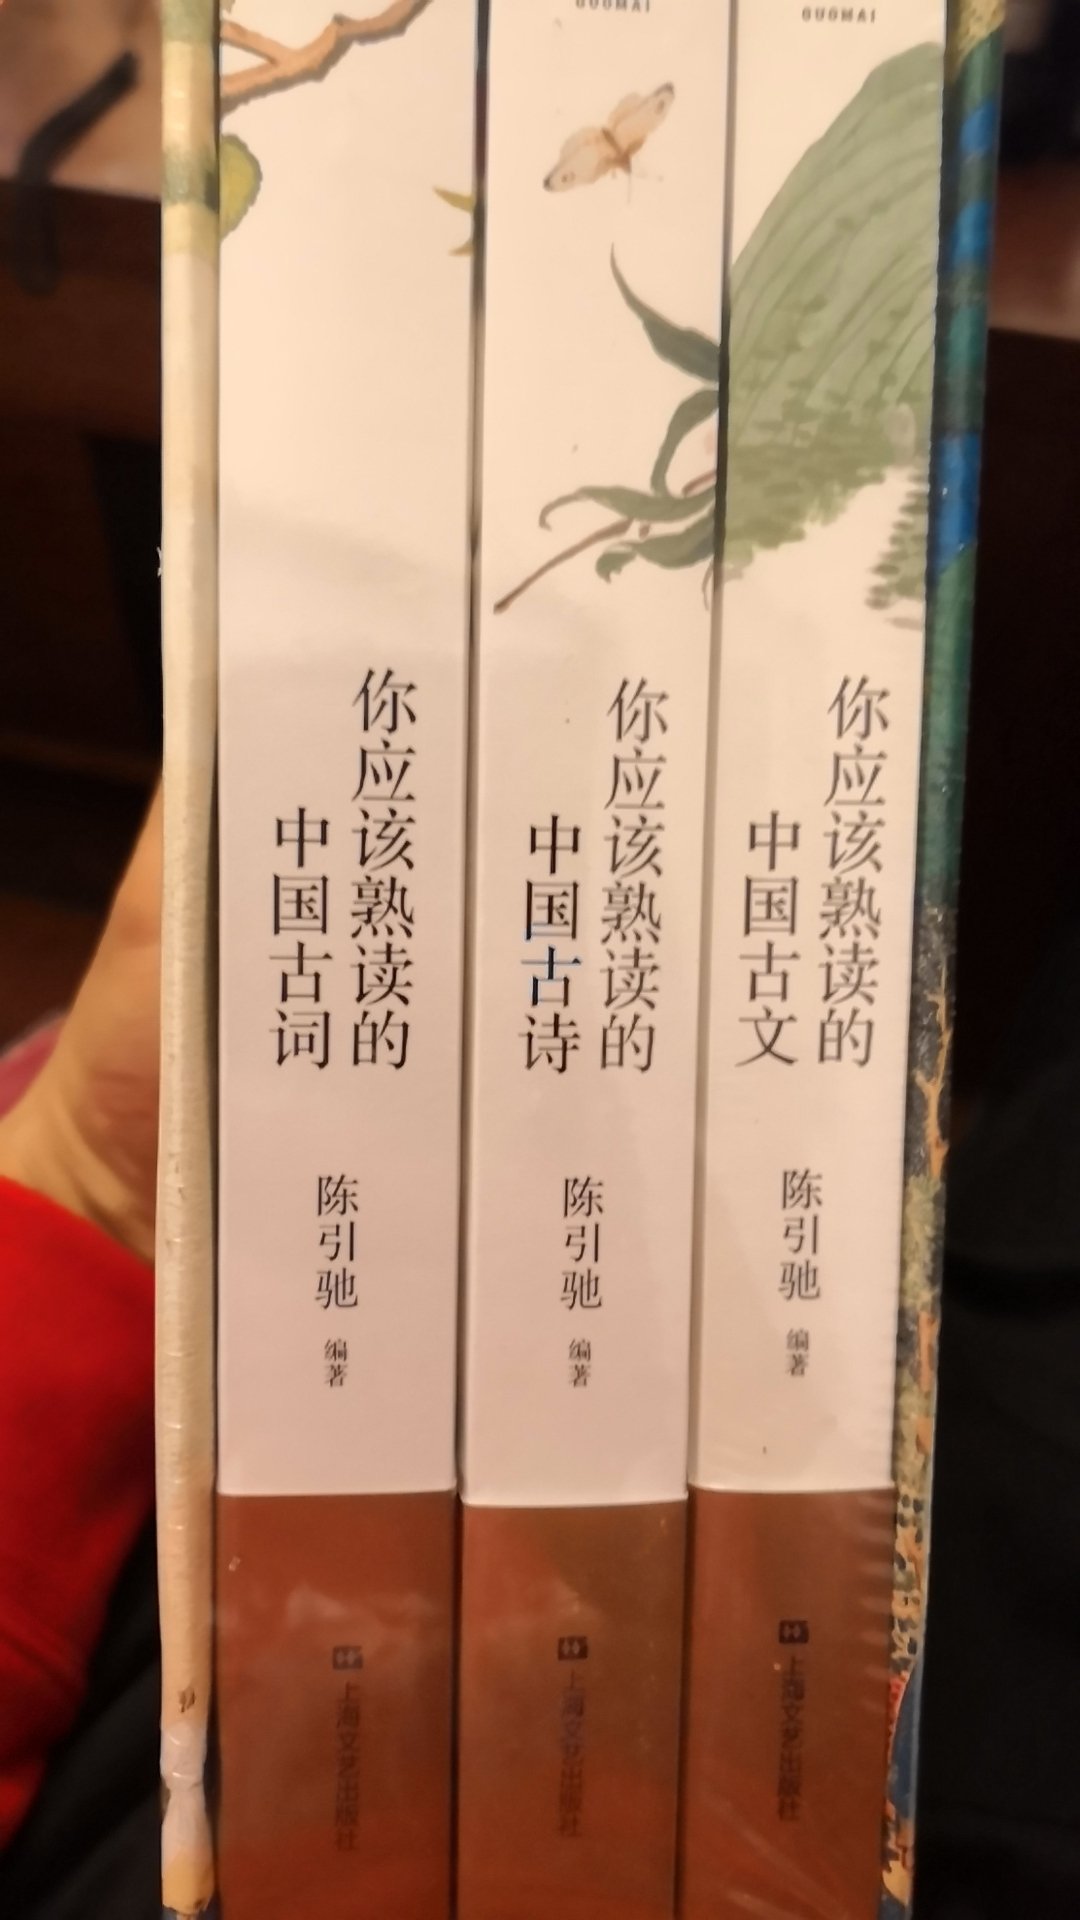 中国古诗词之美要从懂事儿的中小学开始欣赏，同时可以配合课堂教学一起把传统文化的传承下去！书籍不错包装用心，内容精炼！